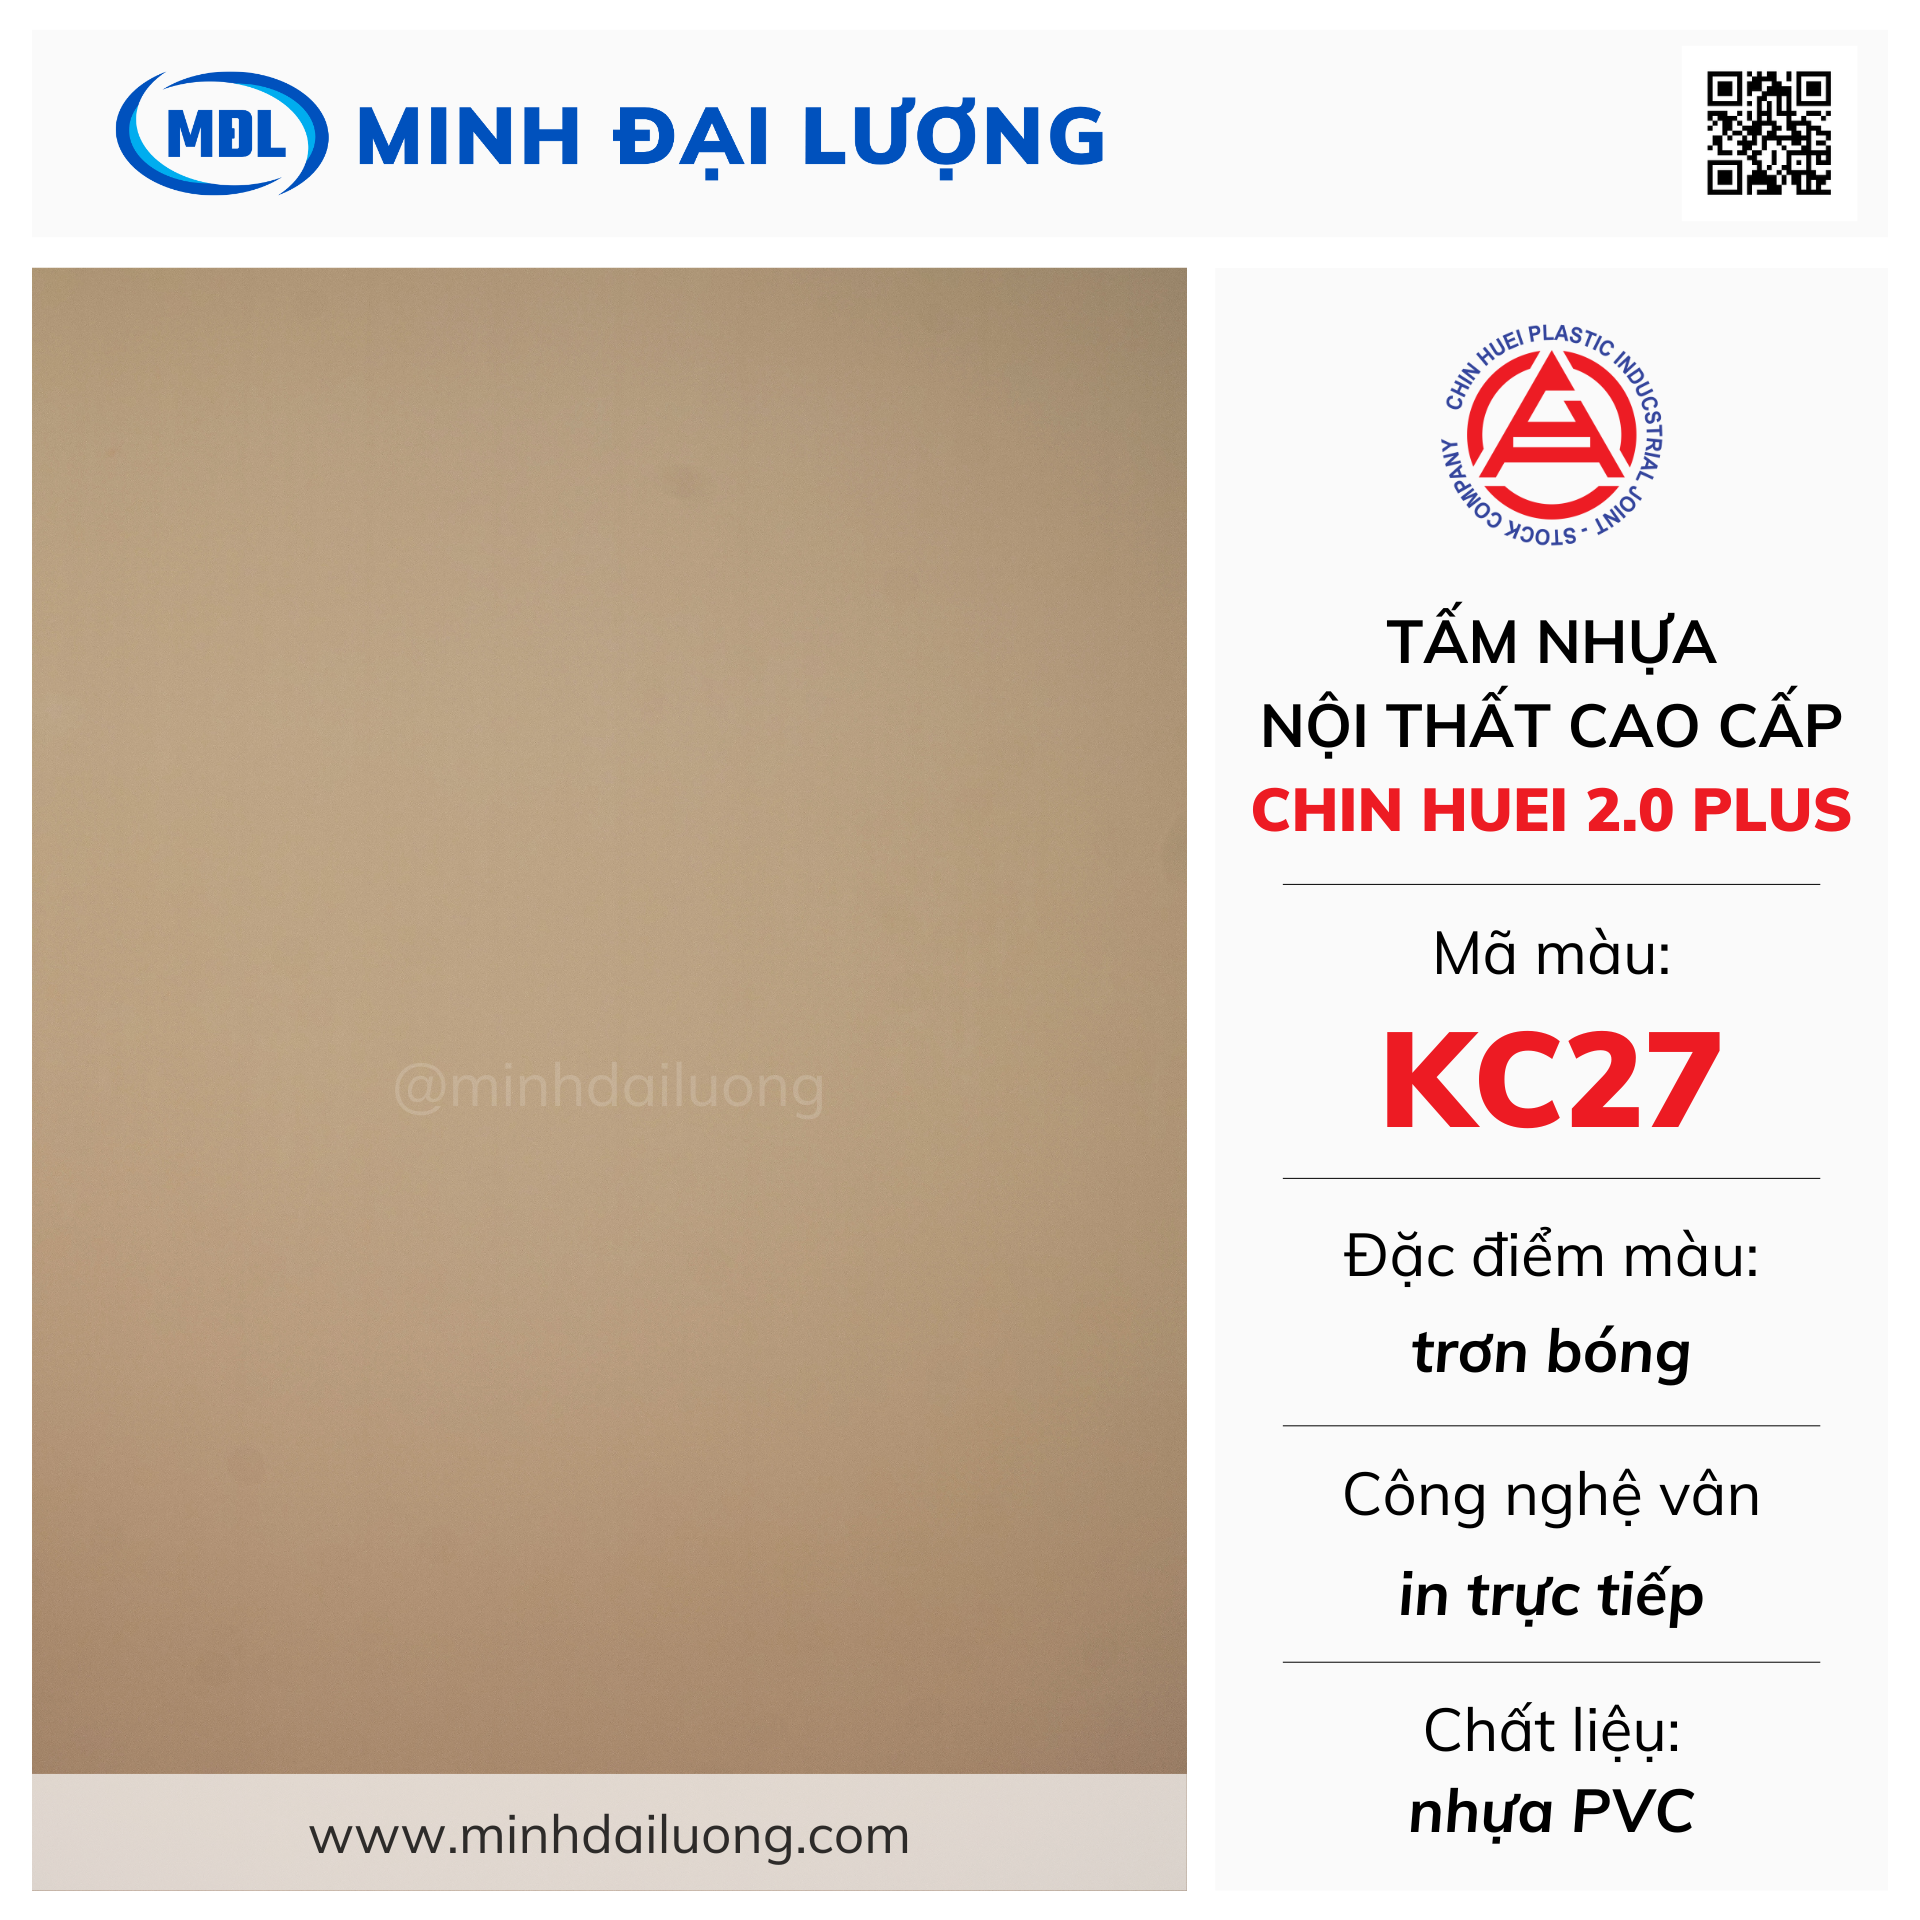 Tấm nhựa nội thất cao cấp Chin Huei 2.0 Plus màu KC27